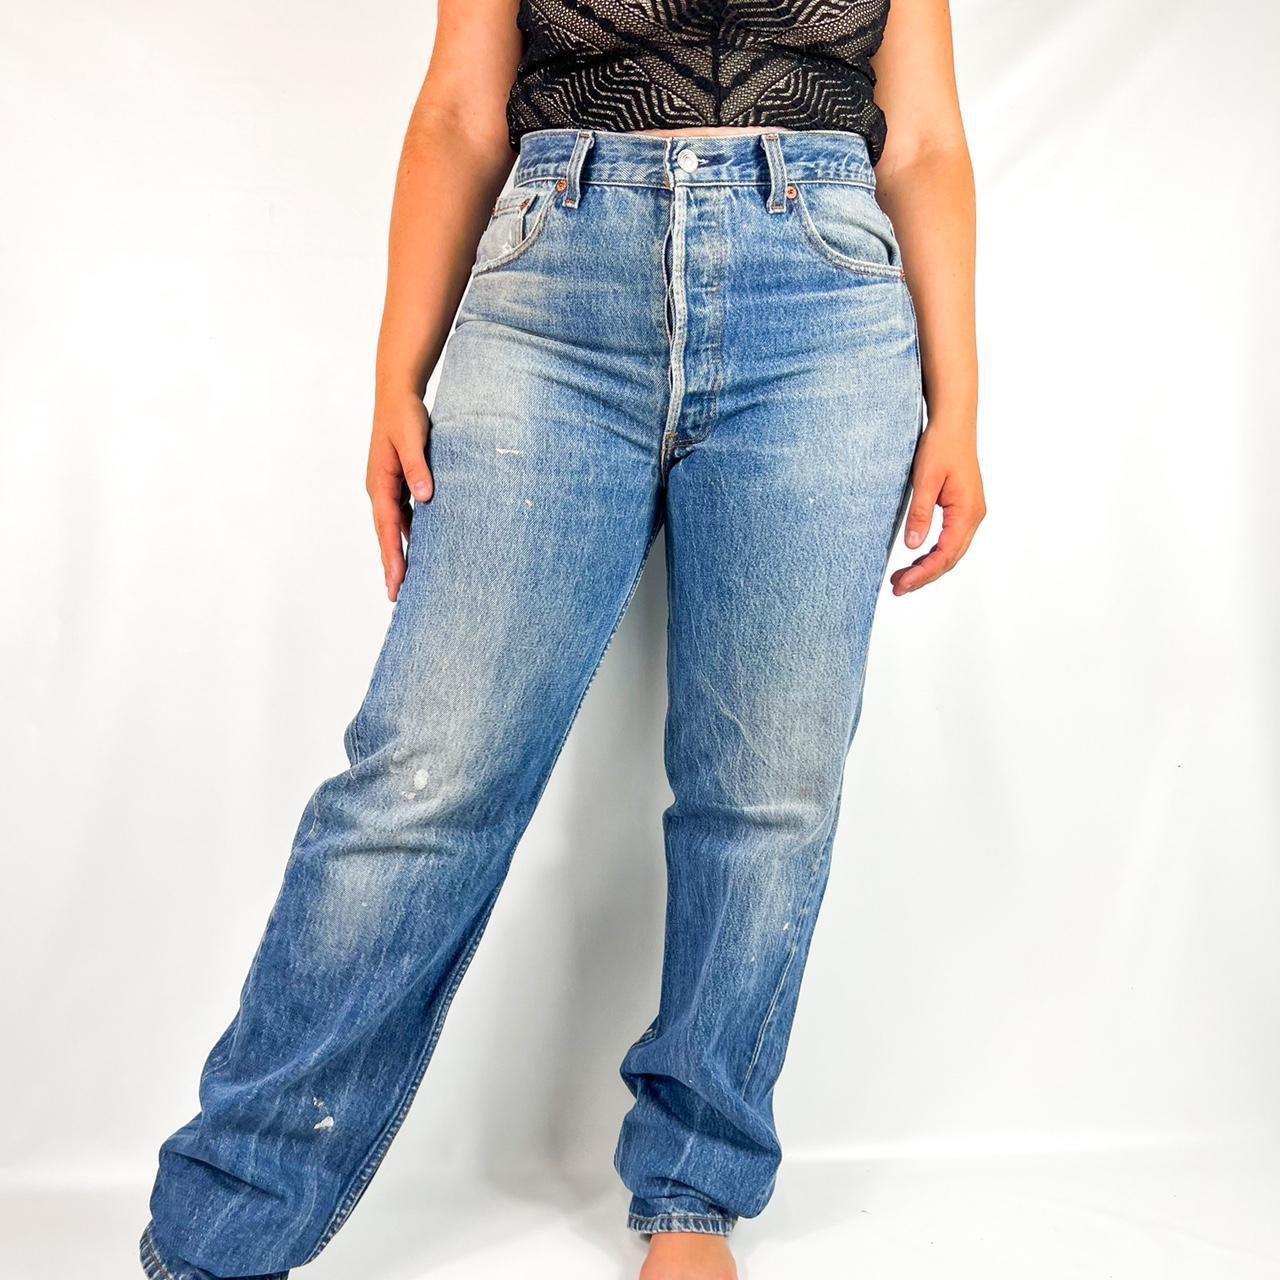 Vintage Levi 501 jeans Made in USA Medium wash,... - Depop